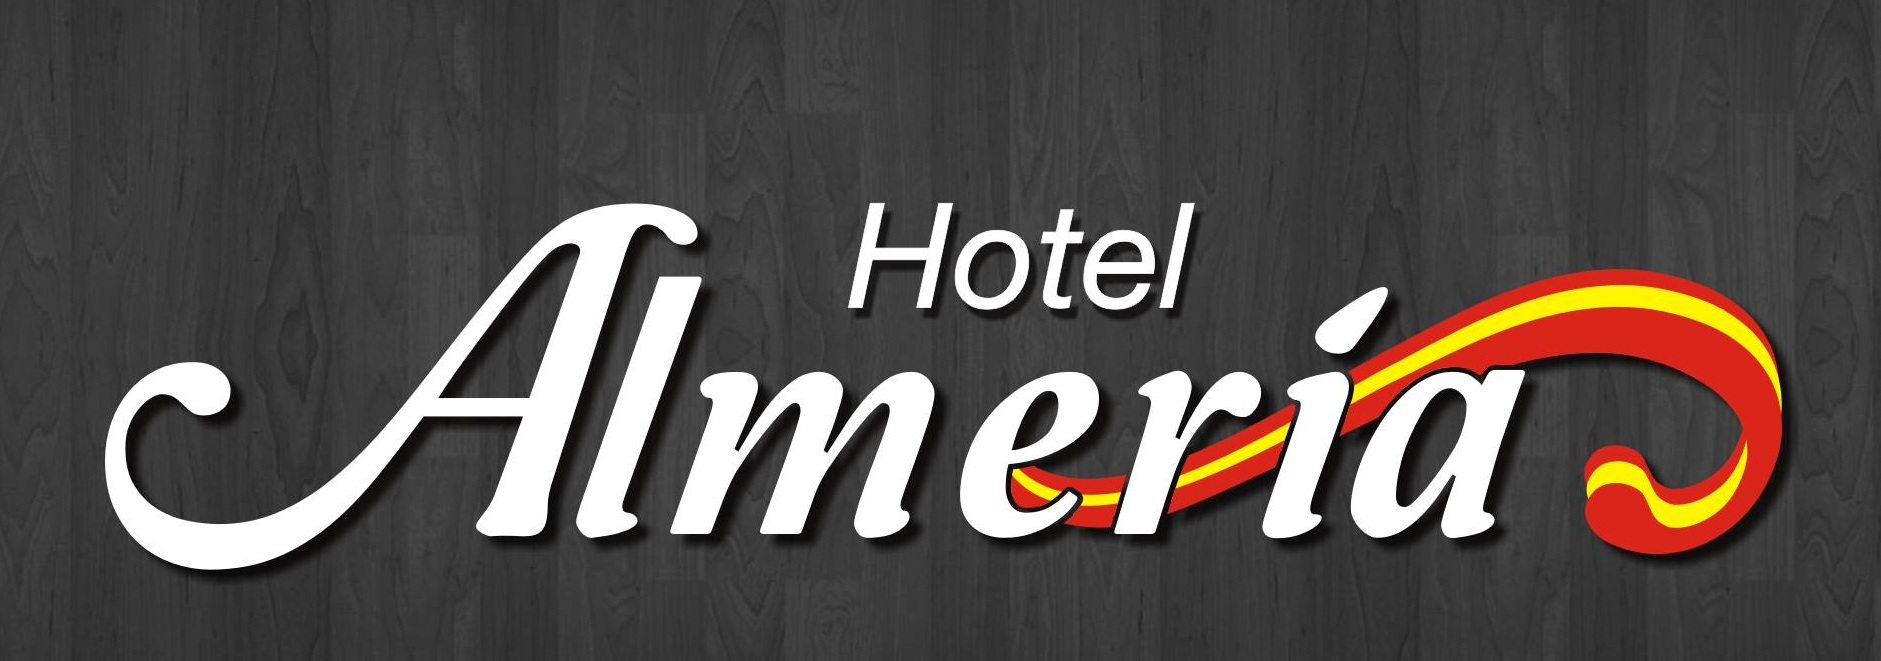 Hotel Almería – 2 Estrellas